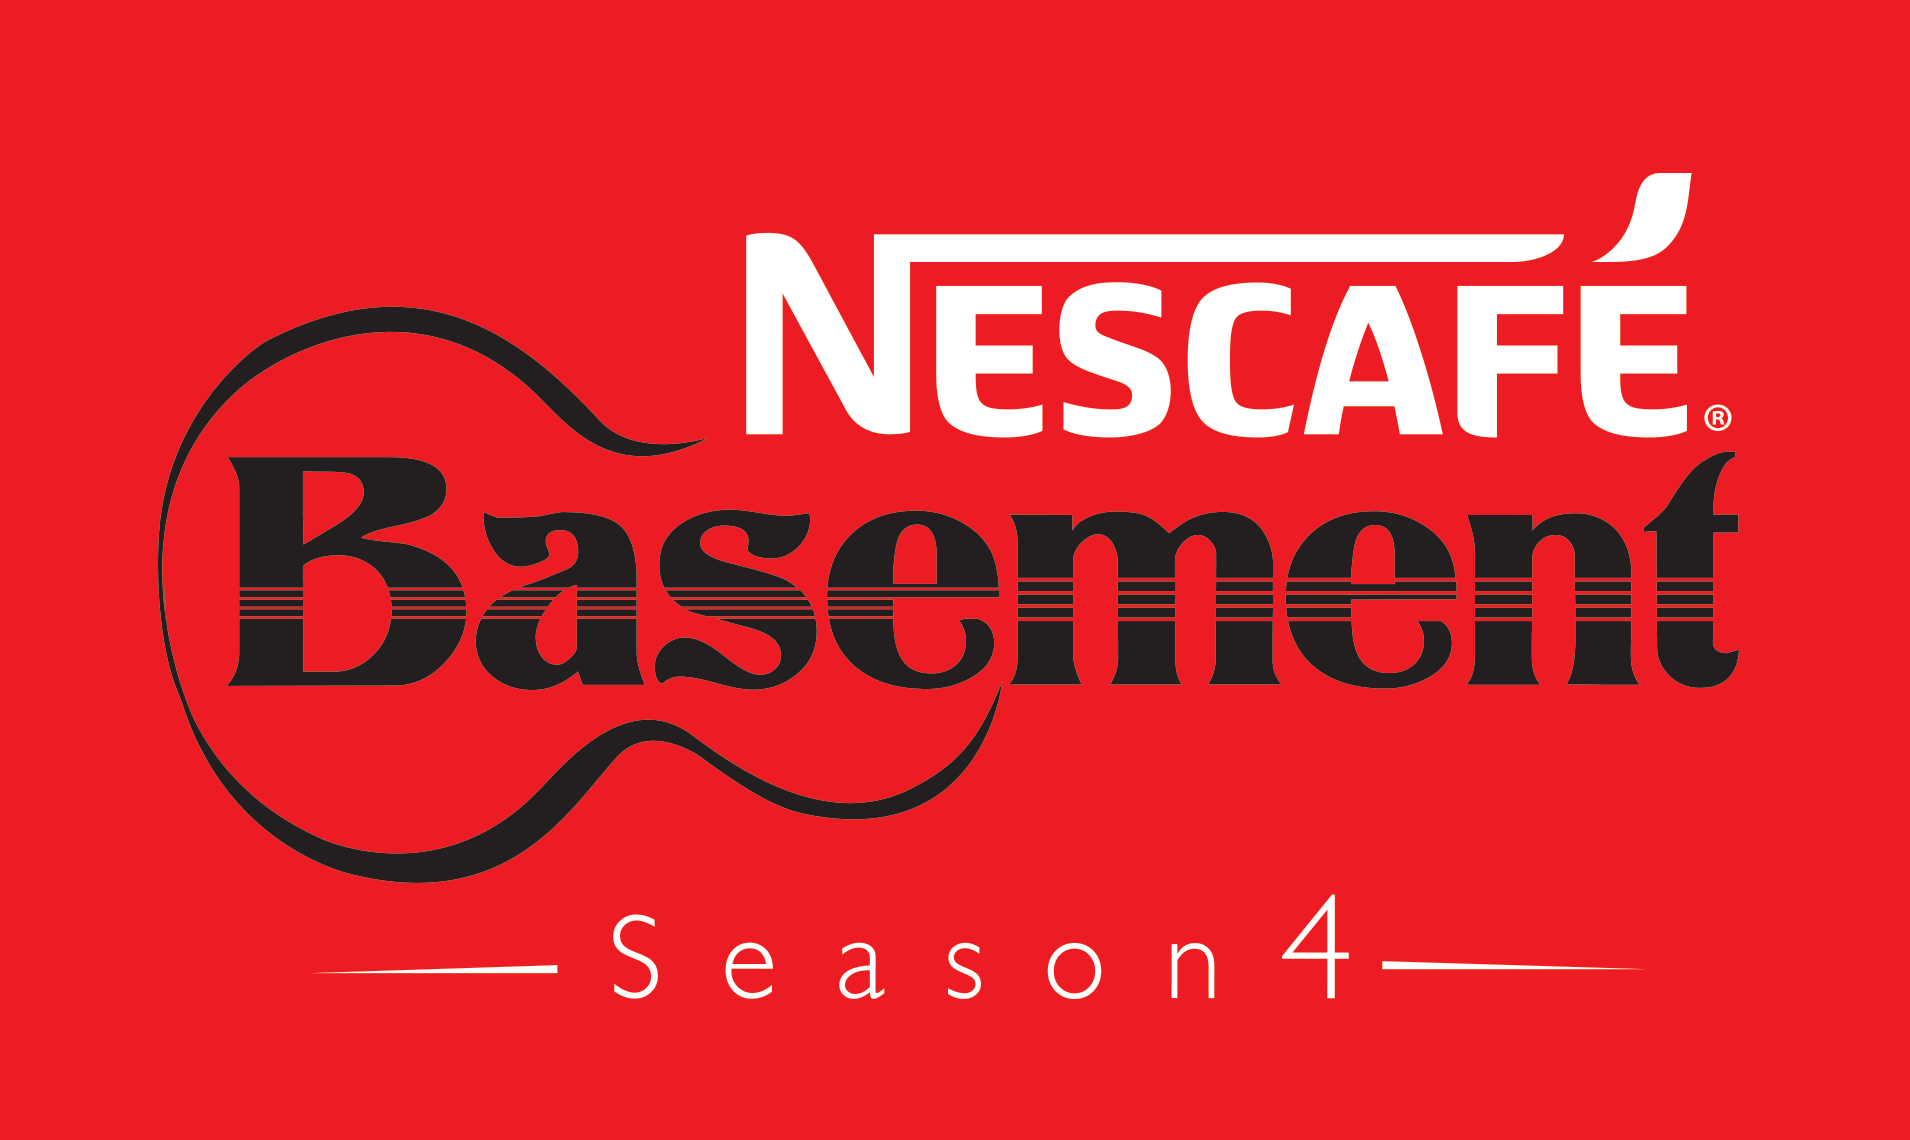 Nescafé Basement Secures Talent for Fourth Season